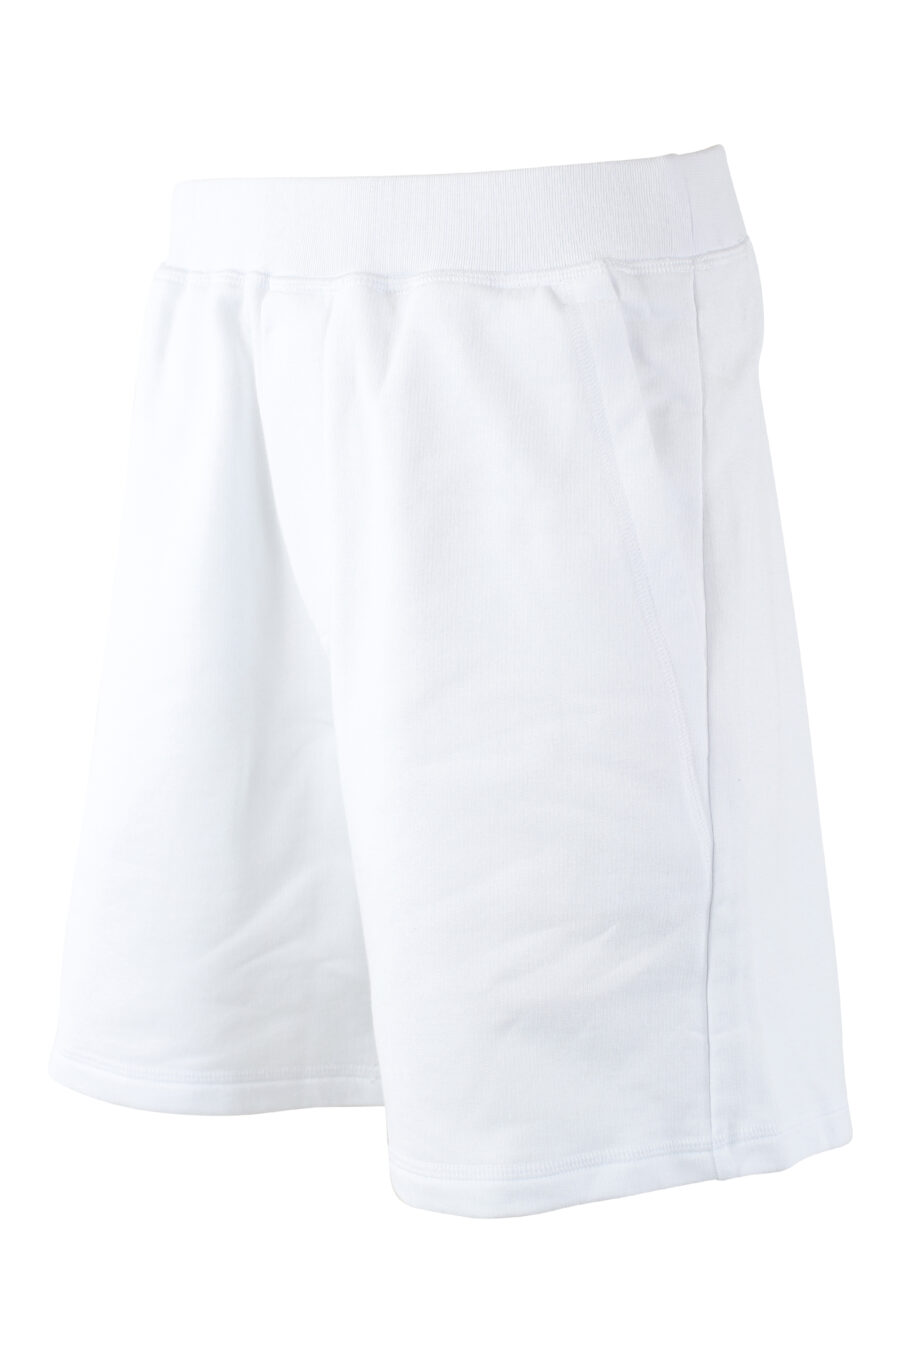 Pantalón de chándal blanco corto "relax fit" - IMG 9720